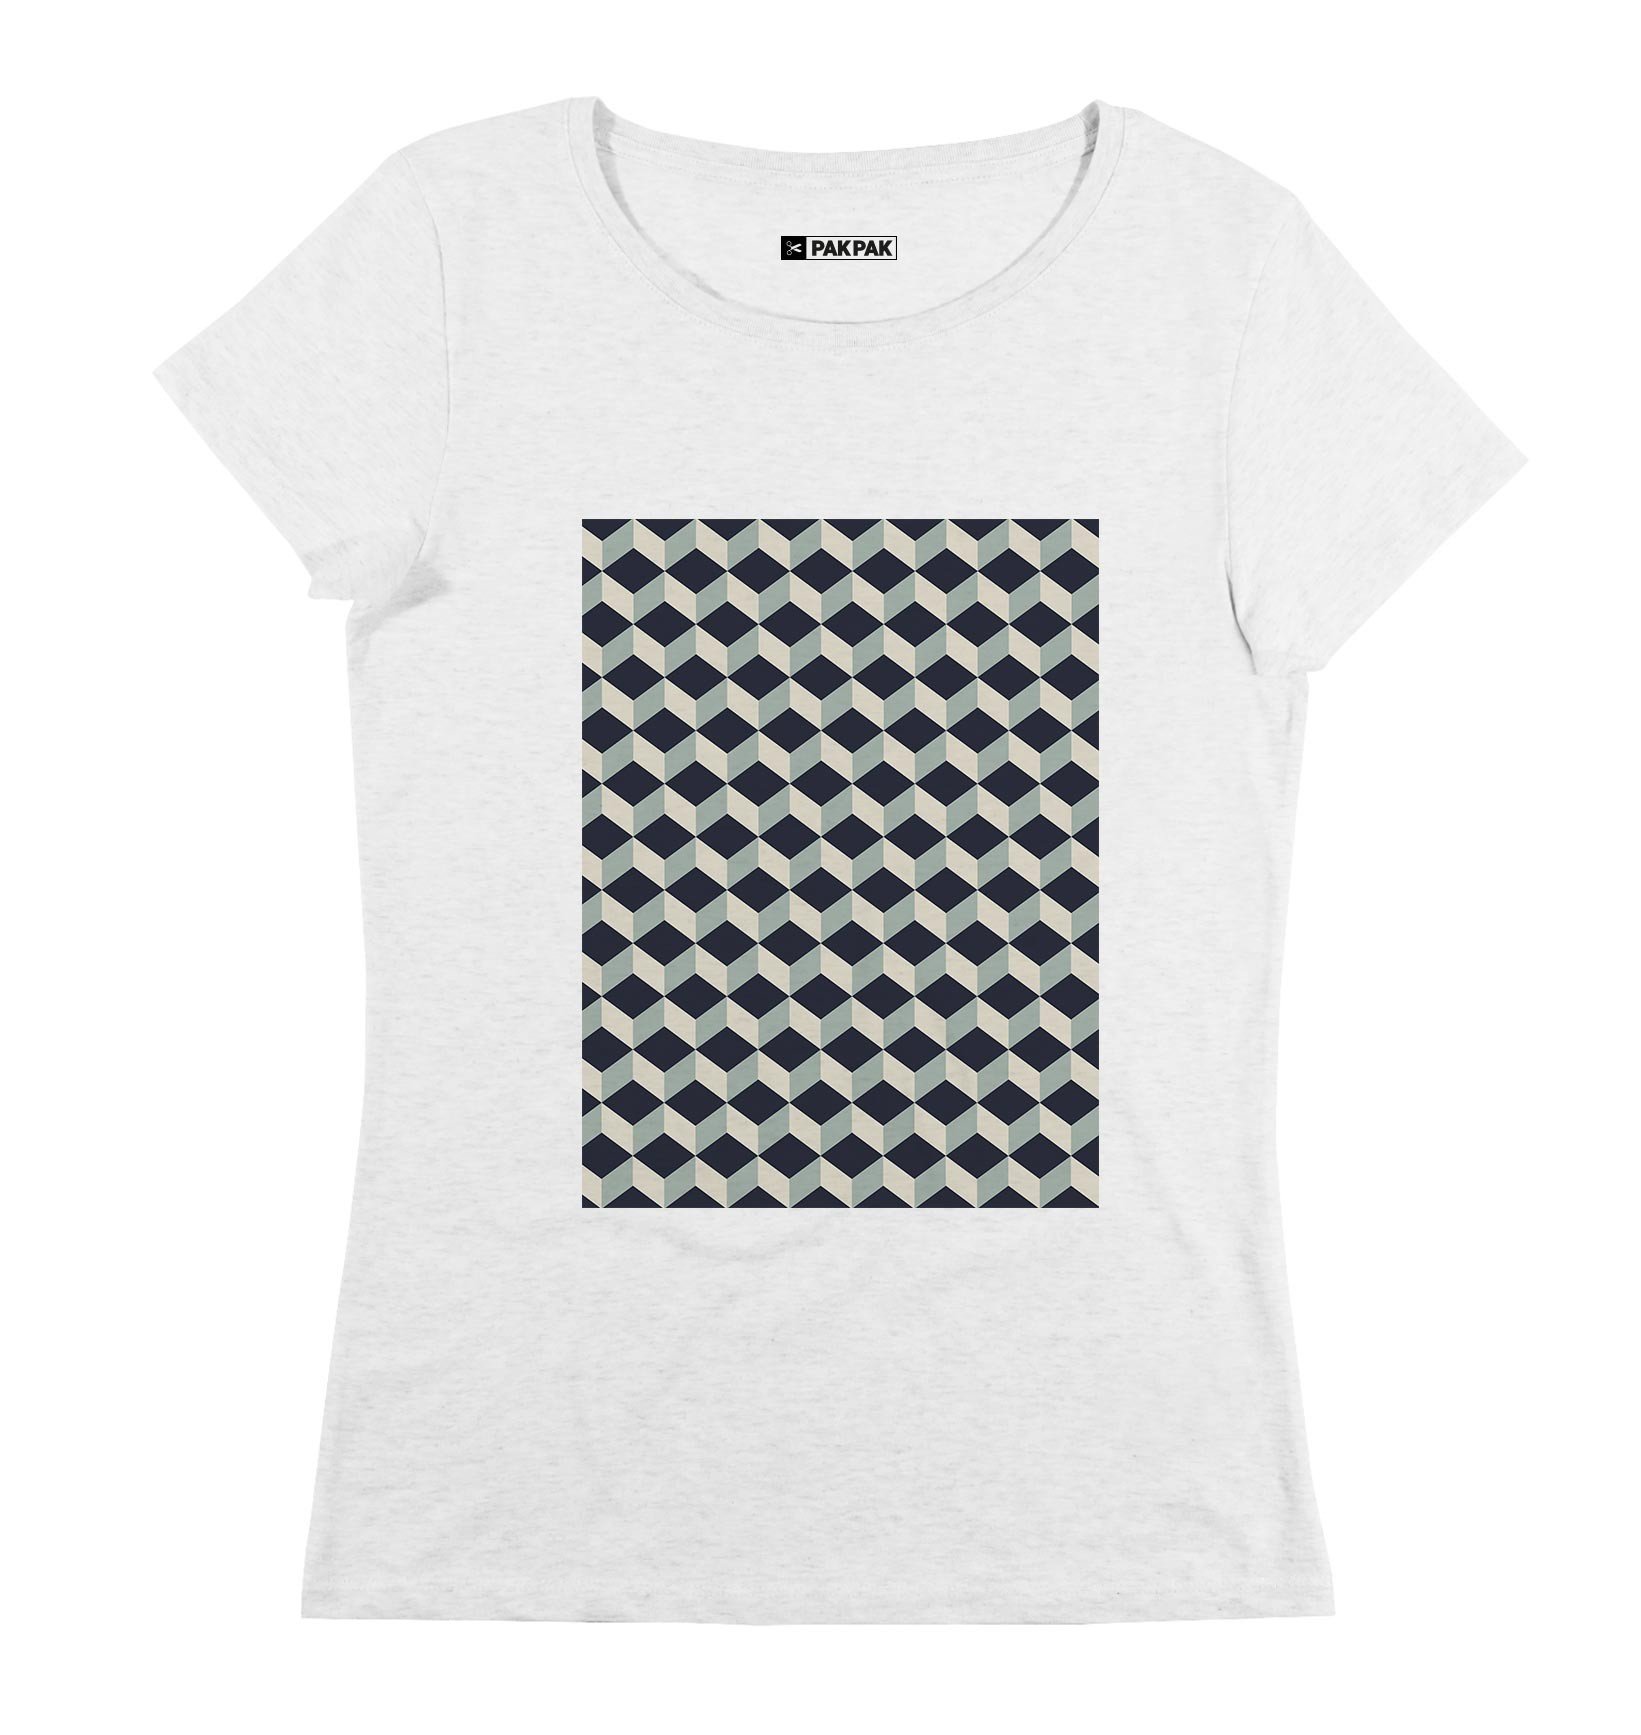 T-shirt Femme avec un Femme Cube 3D Grafitee